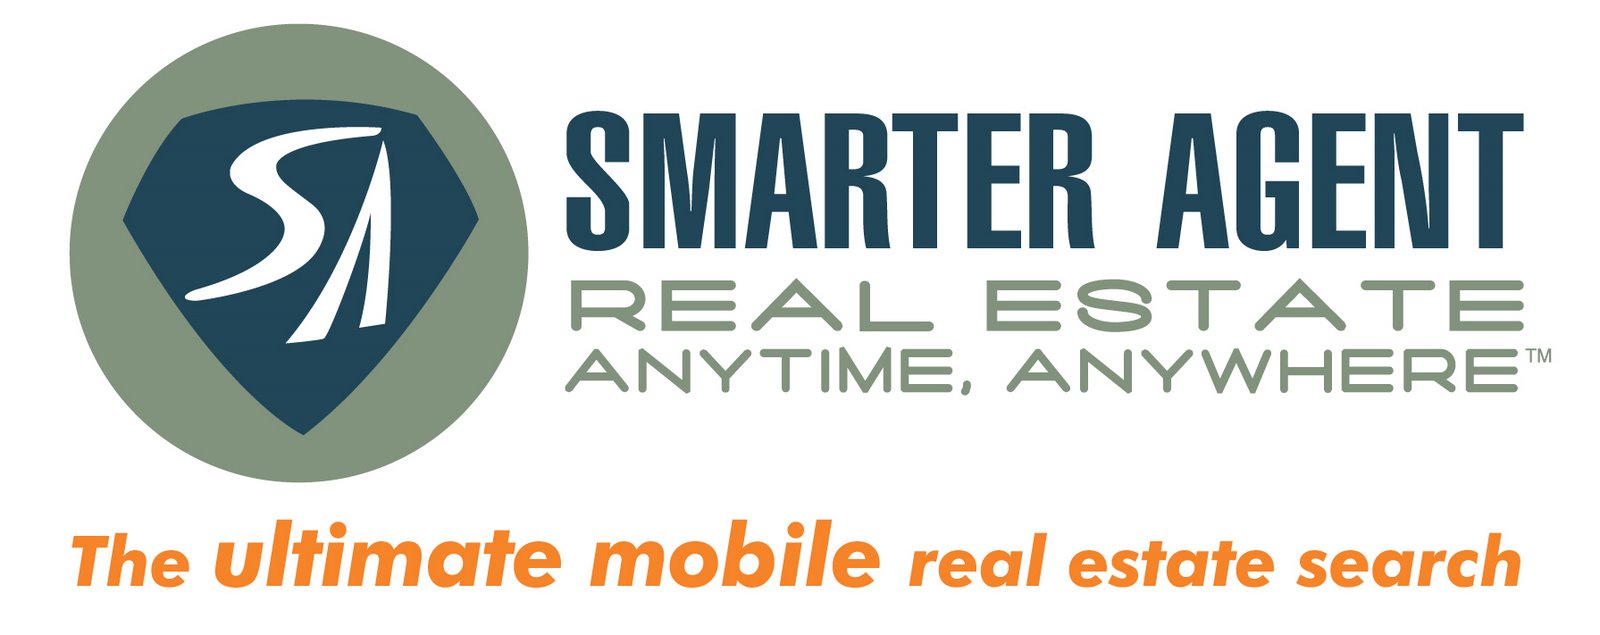 smarter agent logo webbadge